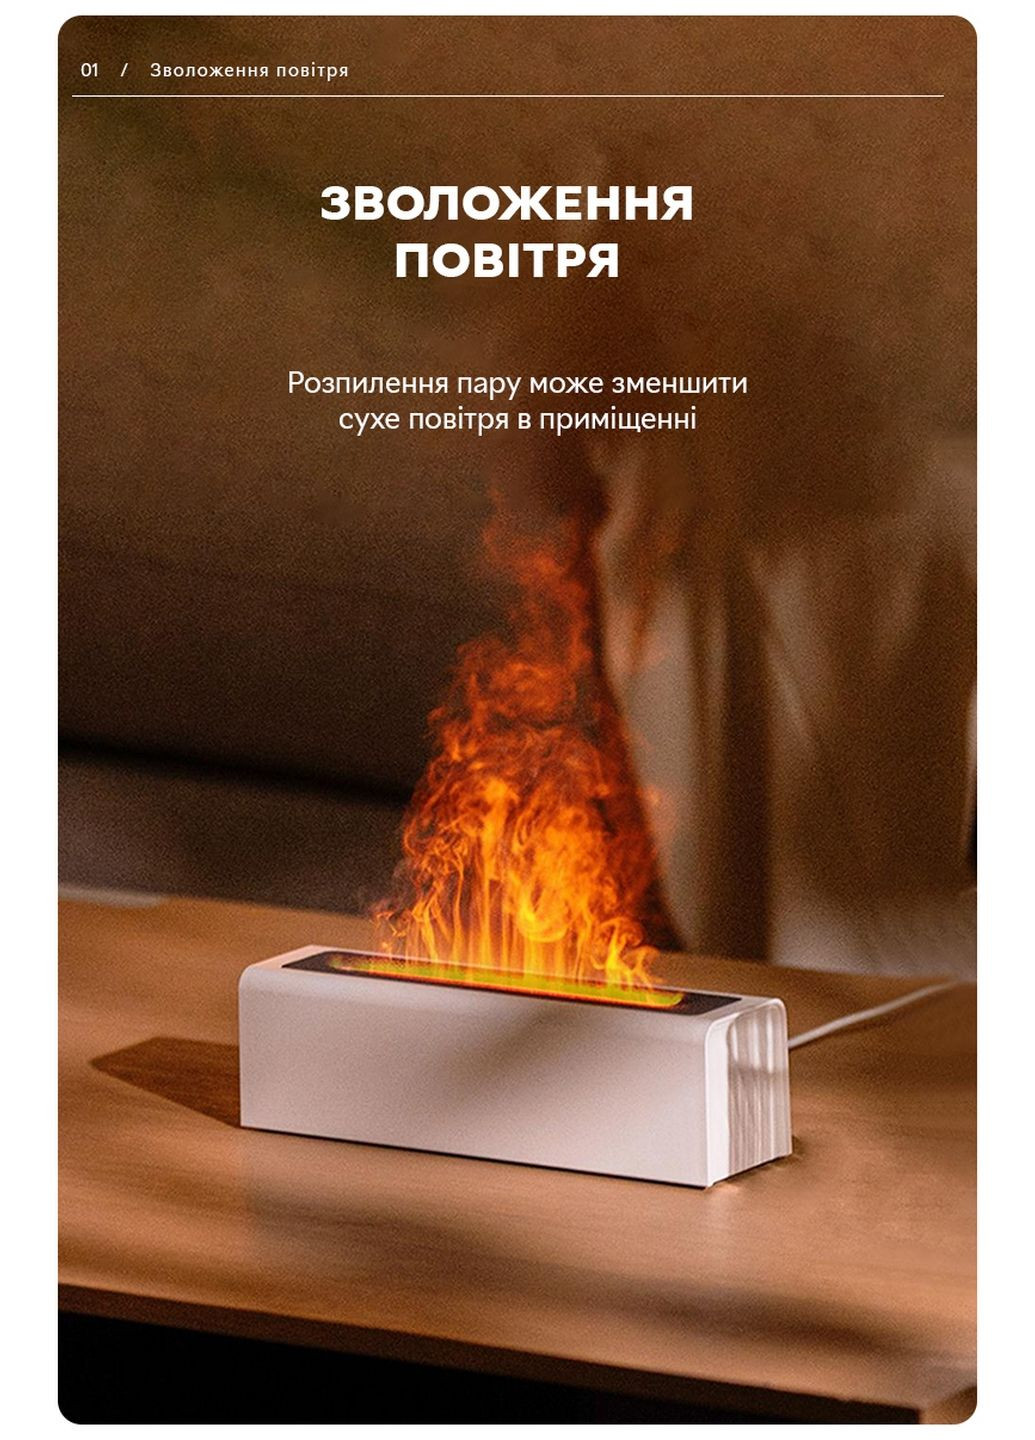 Увлажнитель воздуха портативный DQ-711 Nordic Style Flame V3 аромадифузор электрический, эффект пламени, ПОДАРОК + 2 Арома масла Kinscoter (293419466)